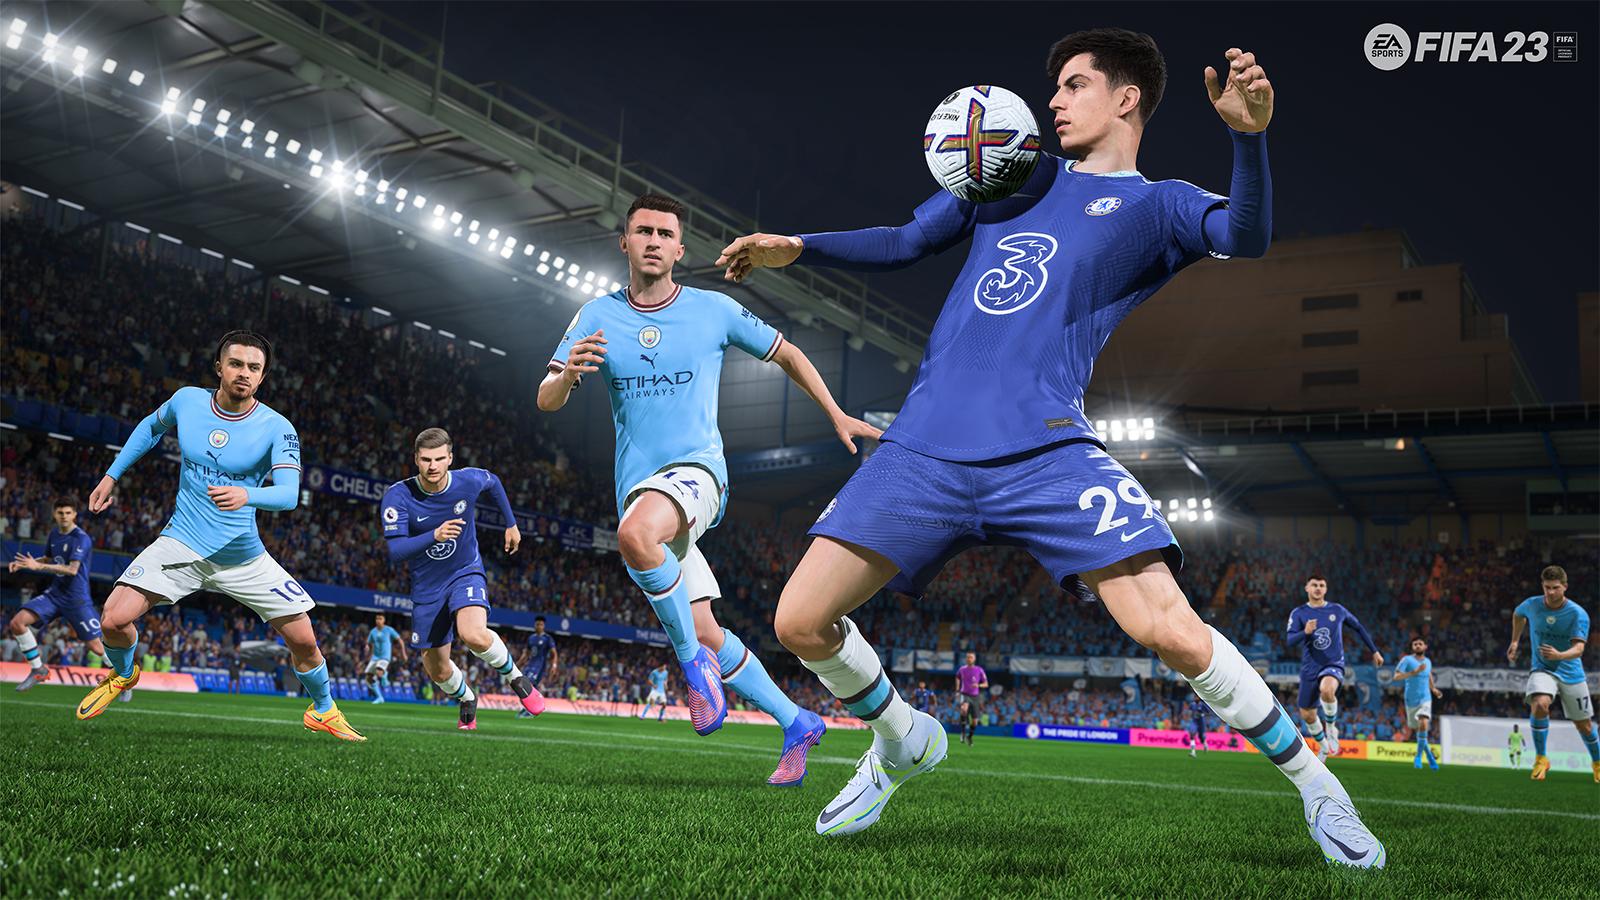 FIFA 23 update